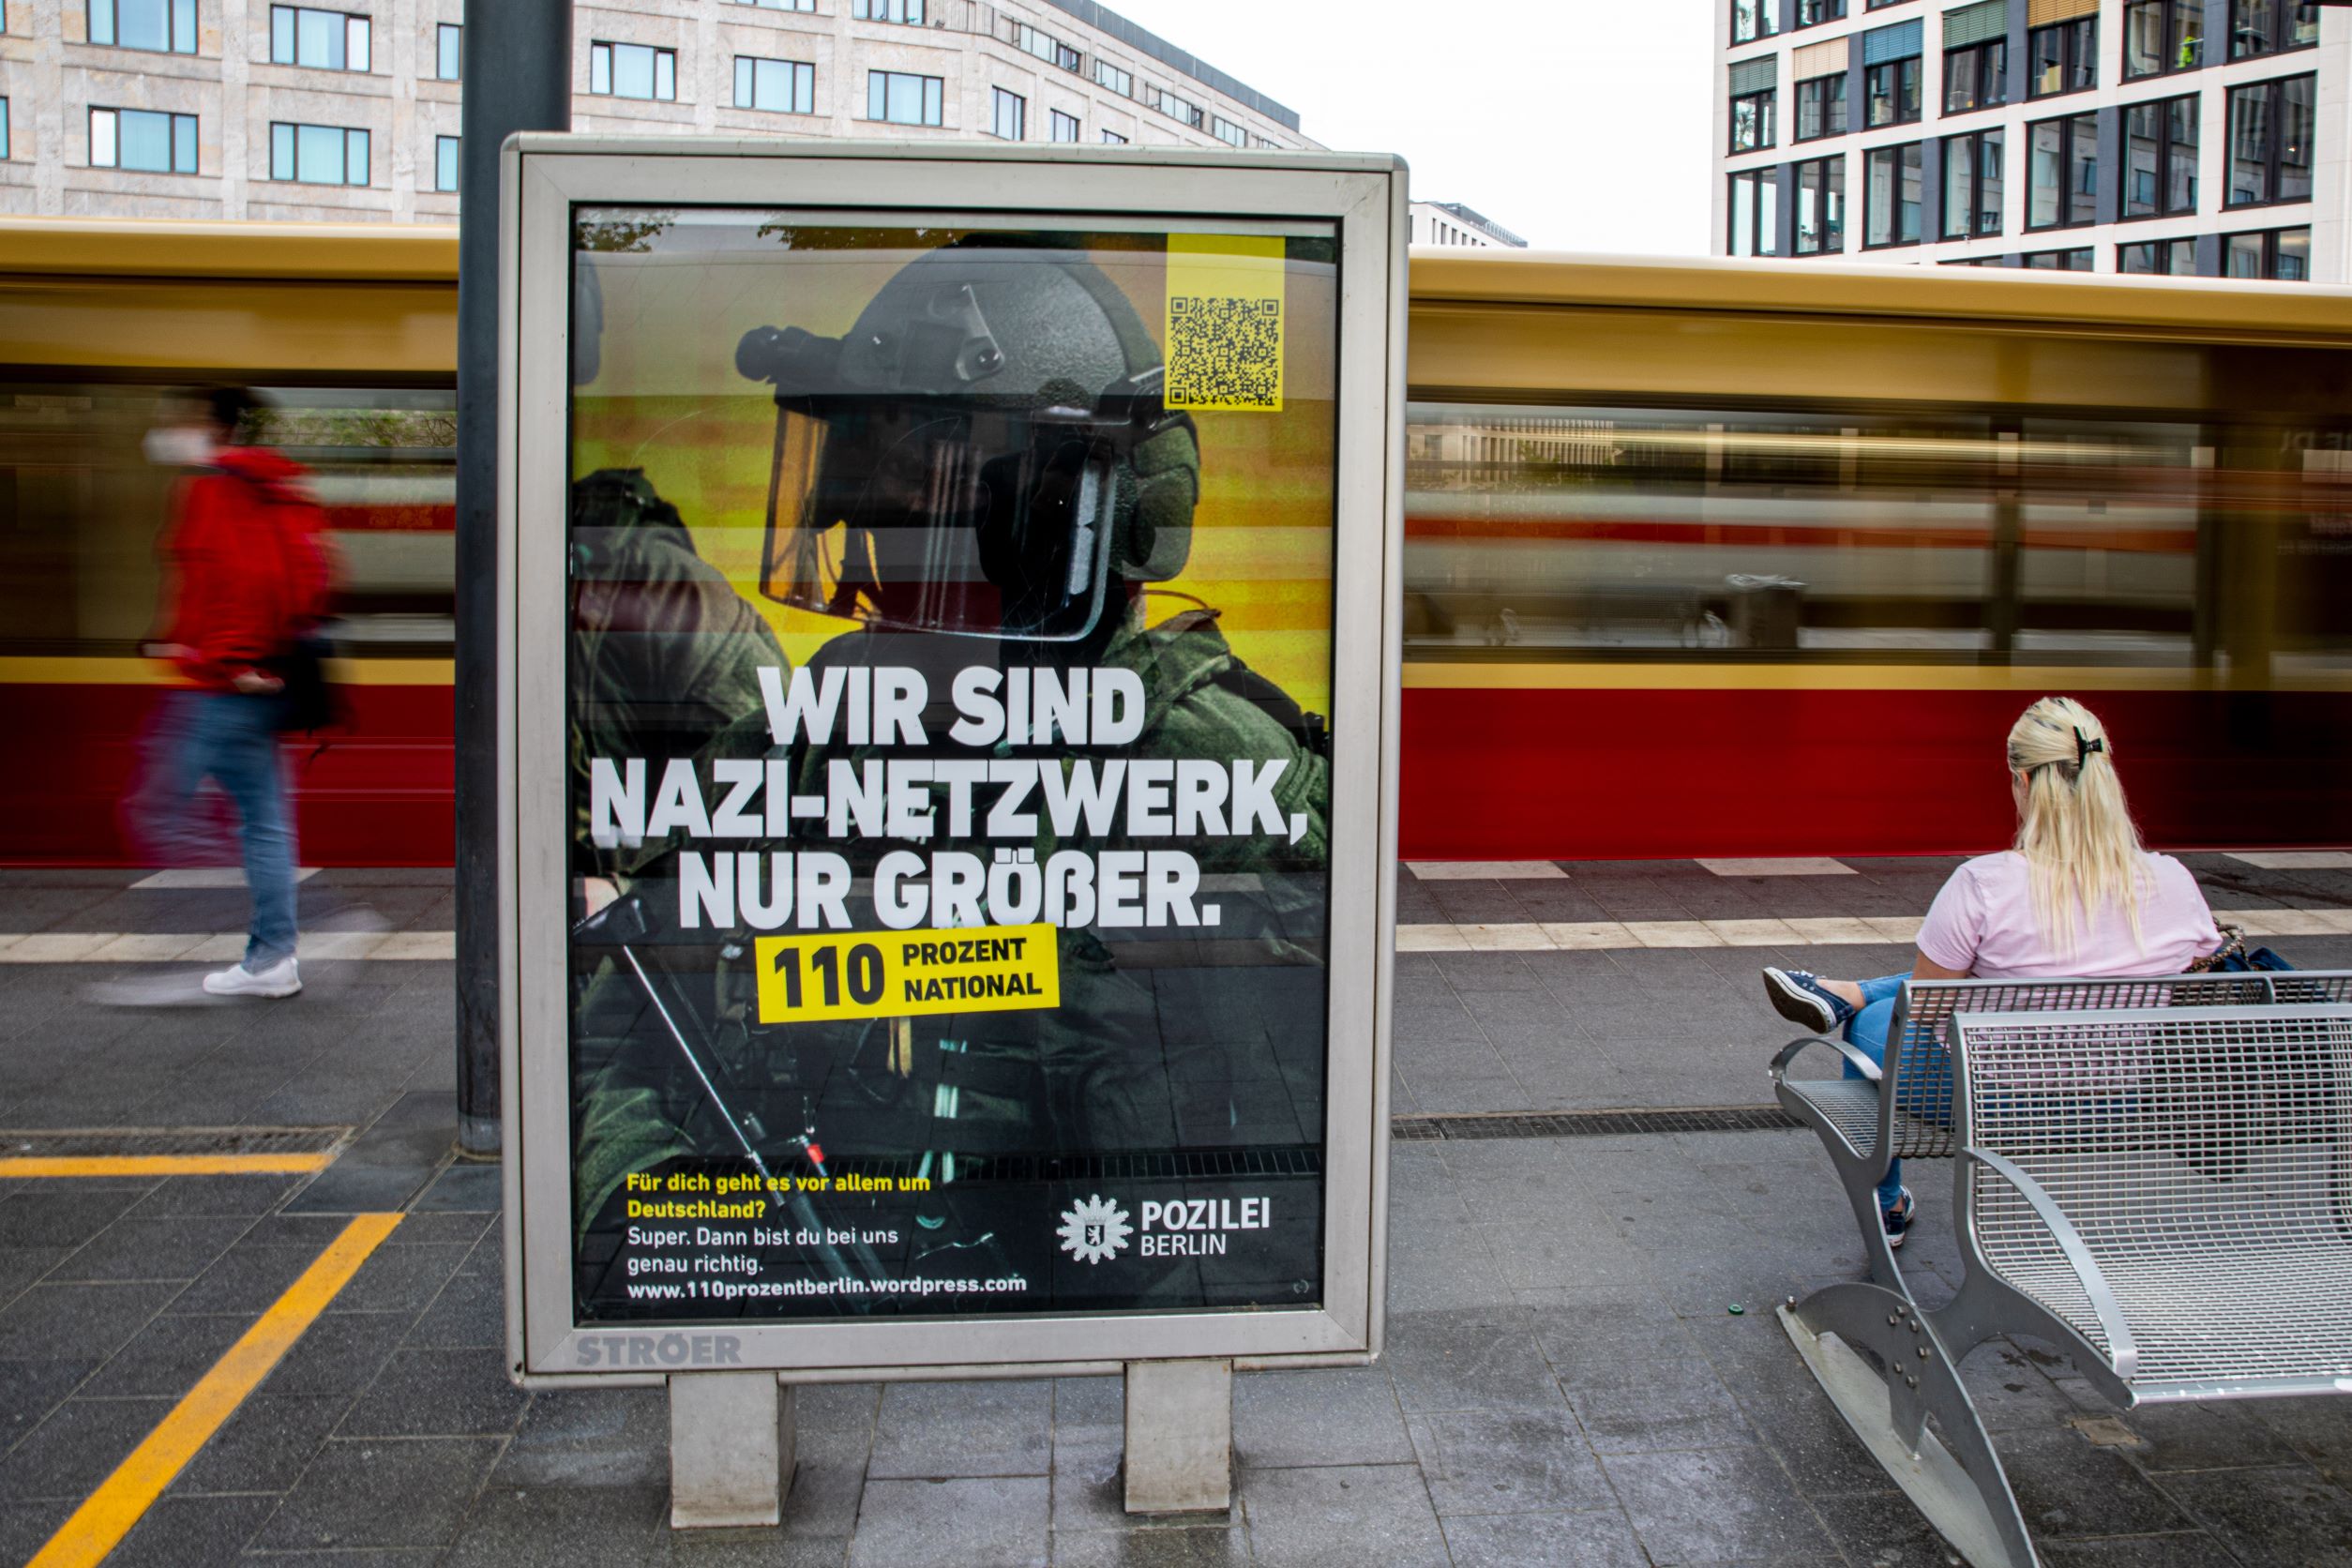 "Wir sind Nazi-Netwerk, nur größer. 110 Prozent national". Ein vermeintliches Werbebild der Polizei Berlin an einem S-Bahnhof prangert Nazi-Netzwerke in den Reihen der Polizei an.